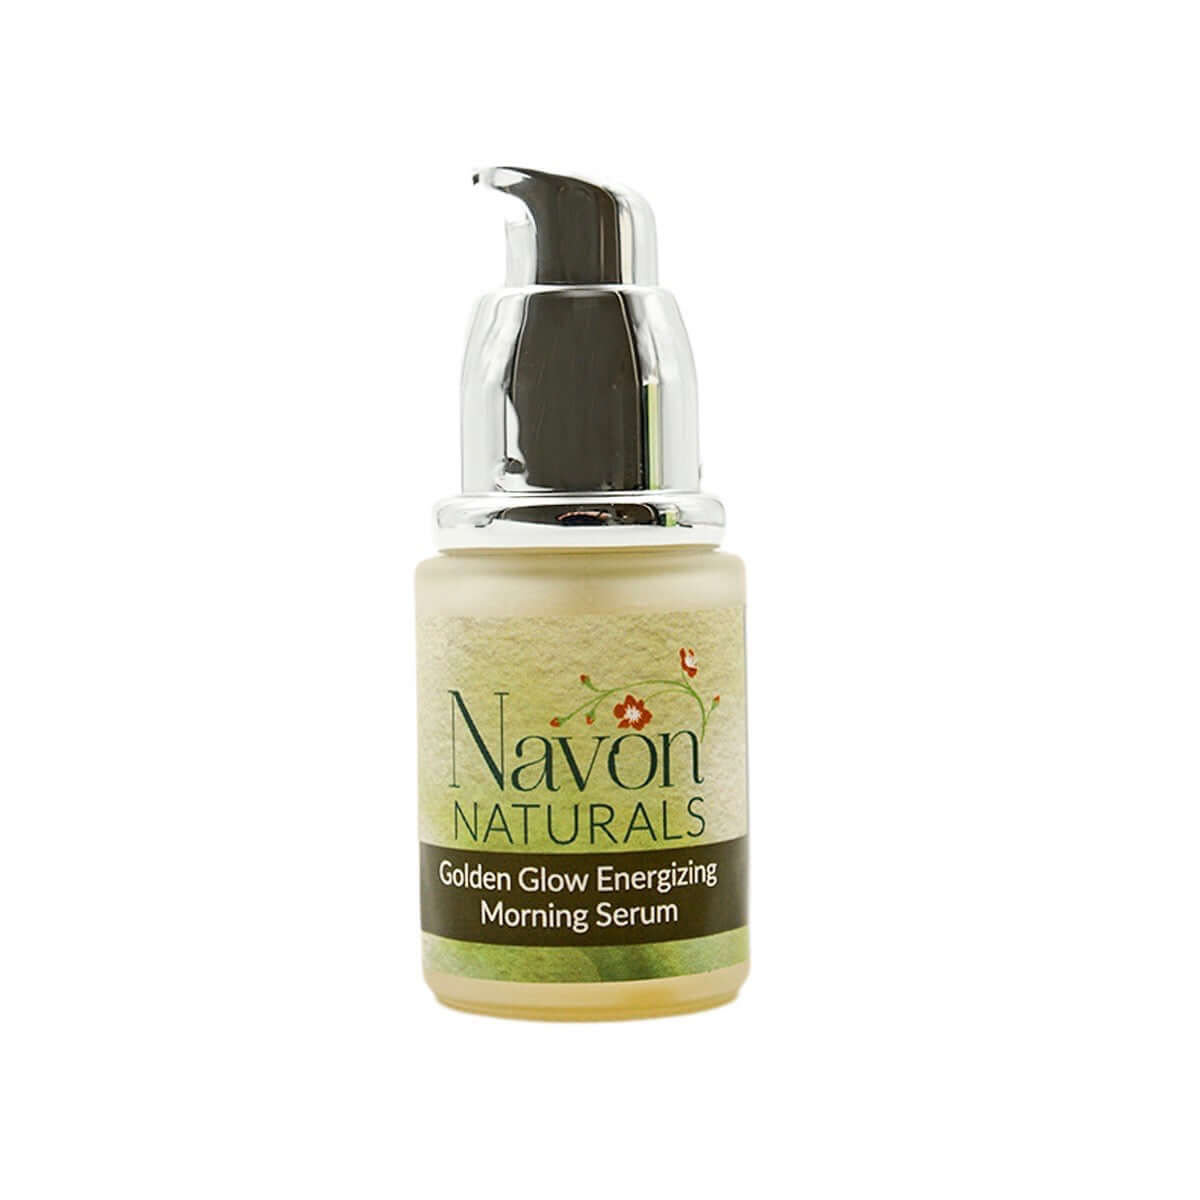 Golden Glow Energizing Morning Serum - Navon Naturals Skincare